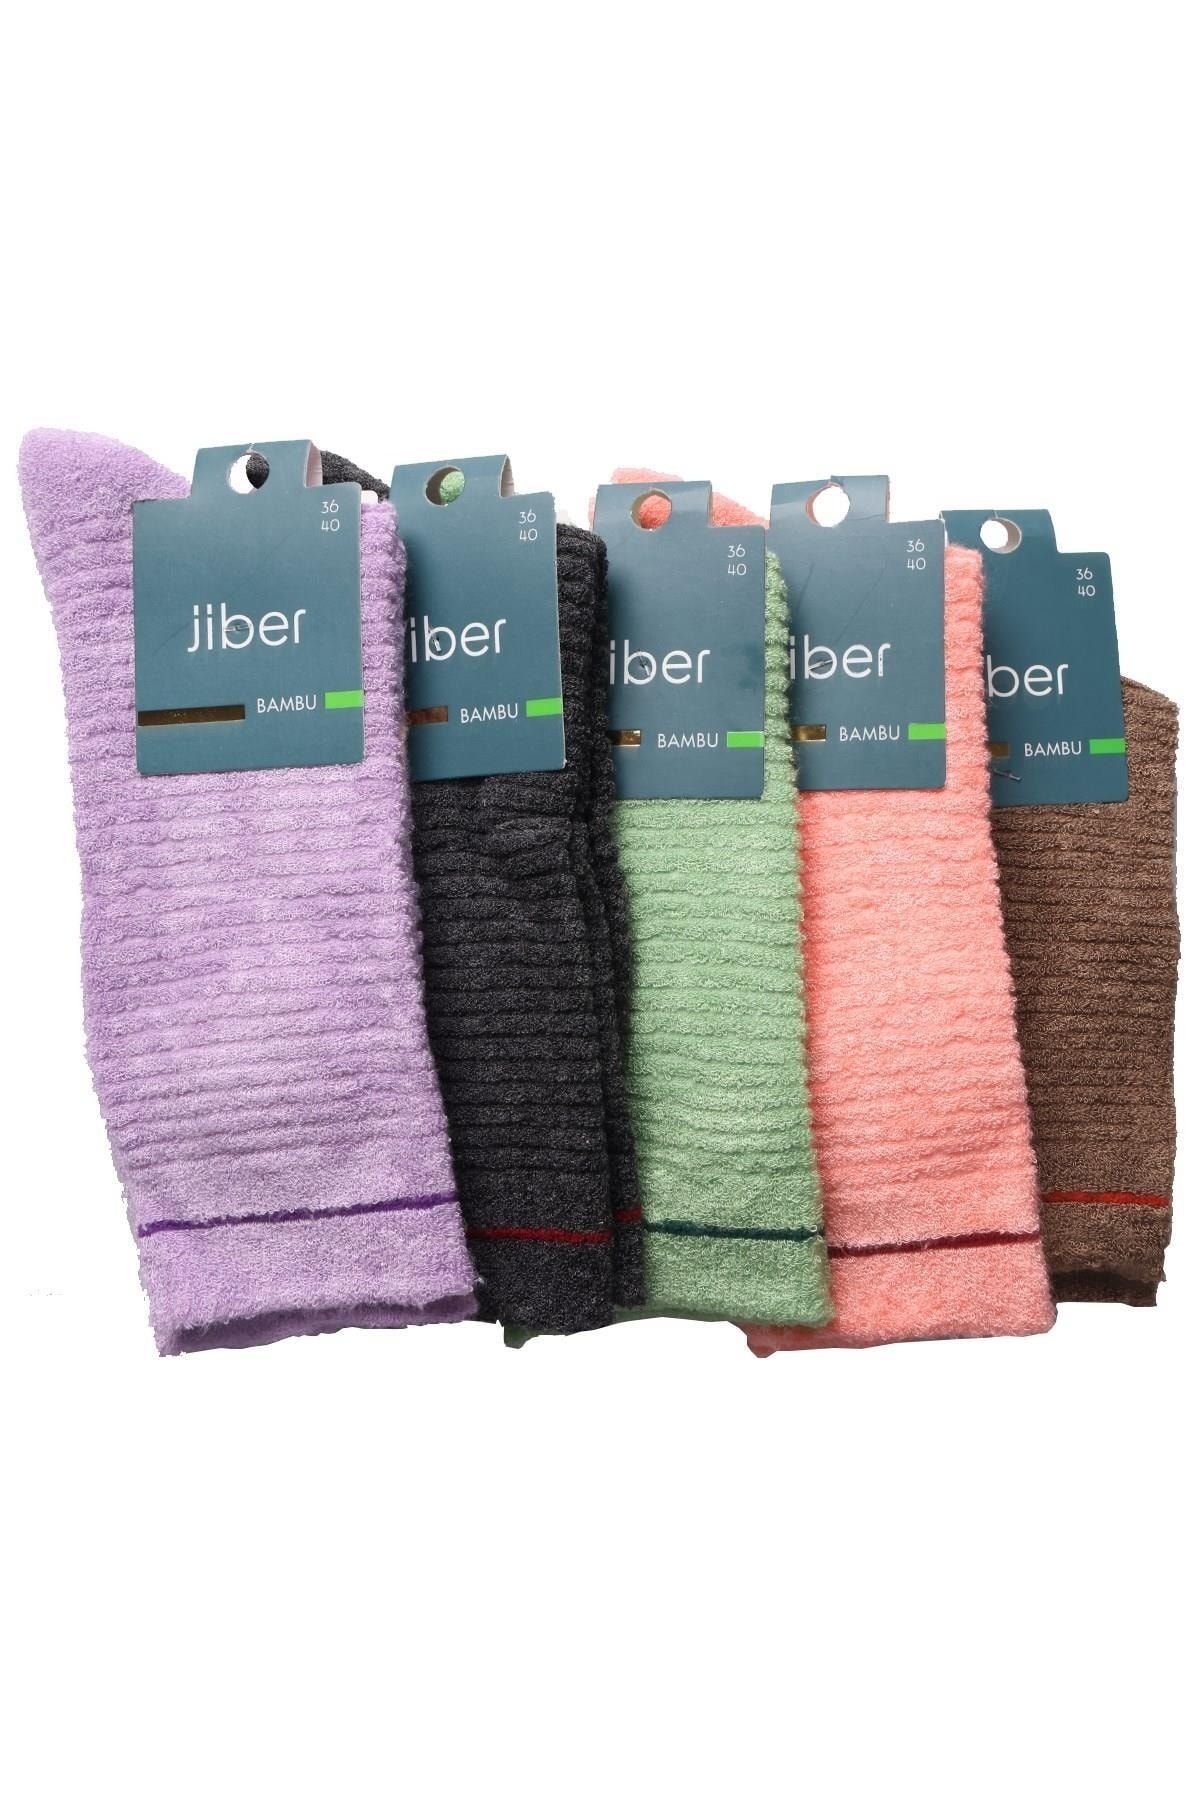 Jiber Kadın Bambu Ters Havlu Soket Çorap 6955 - 6 Adet